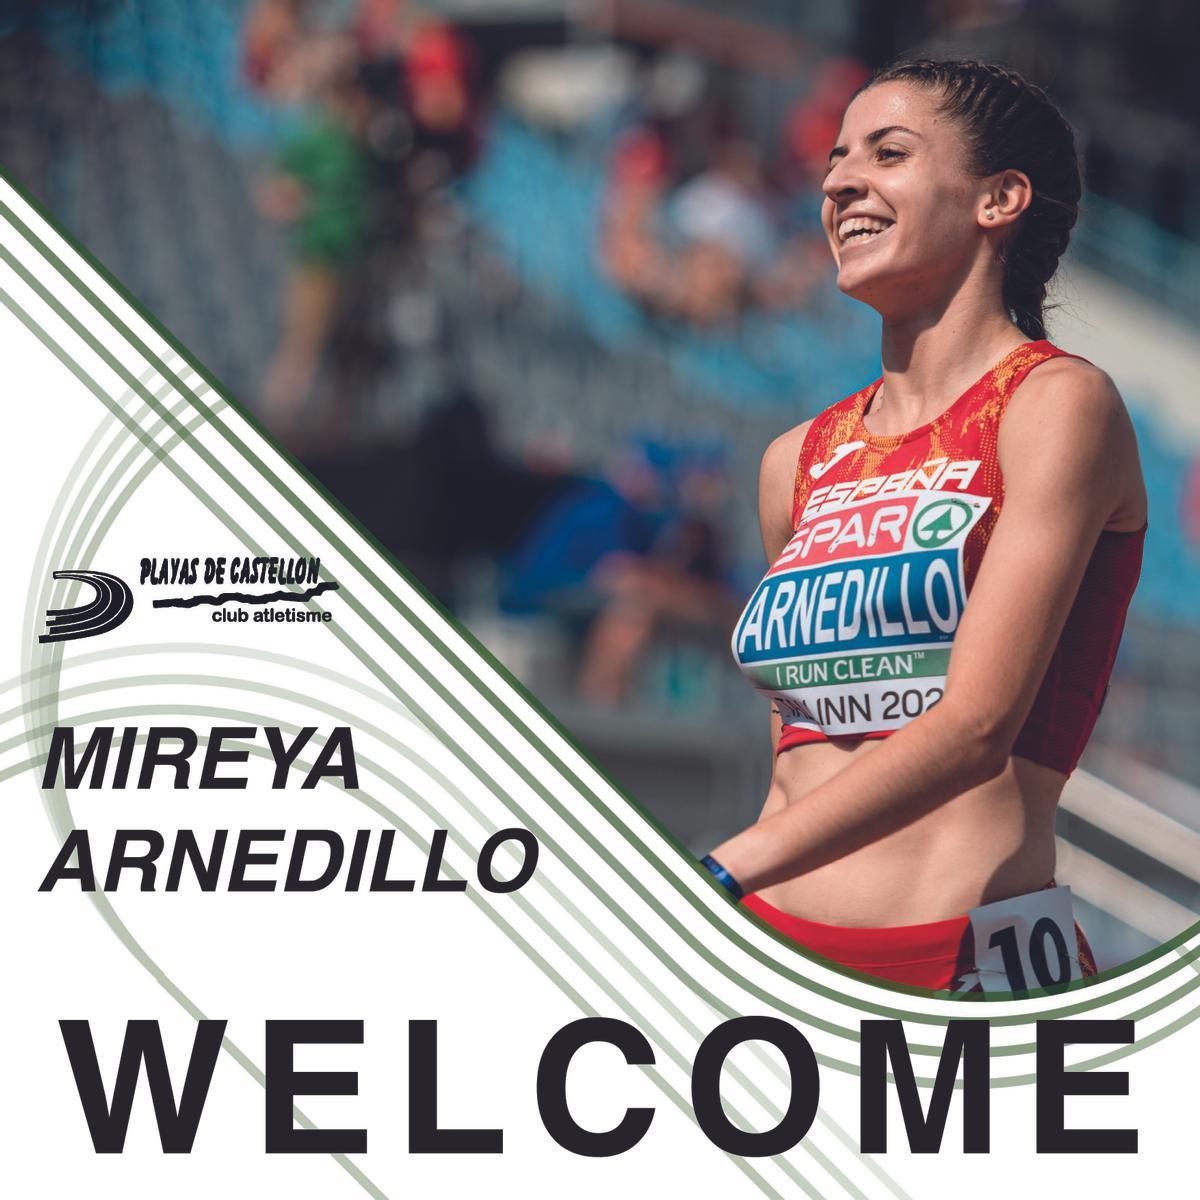 La mediofondista Mireya Arnedillo se postuló este año como uno de los diamantes en bruto del atletismo español.